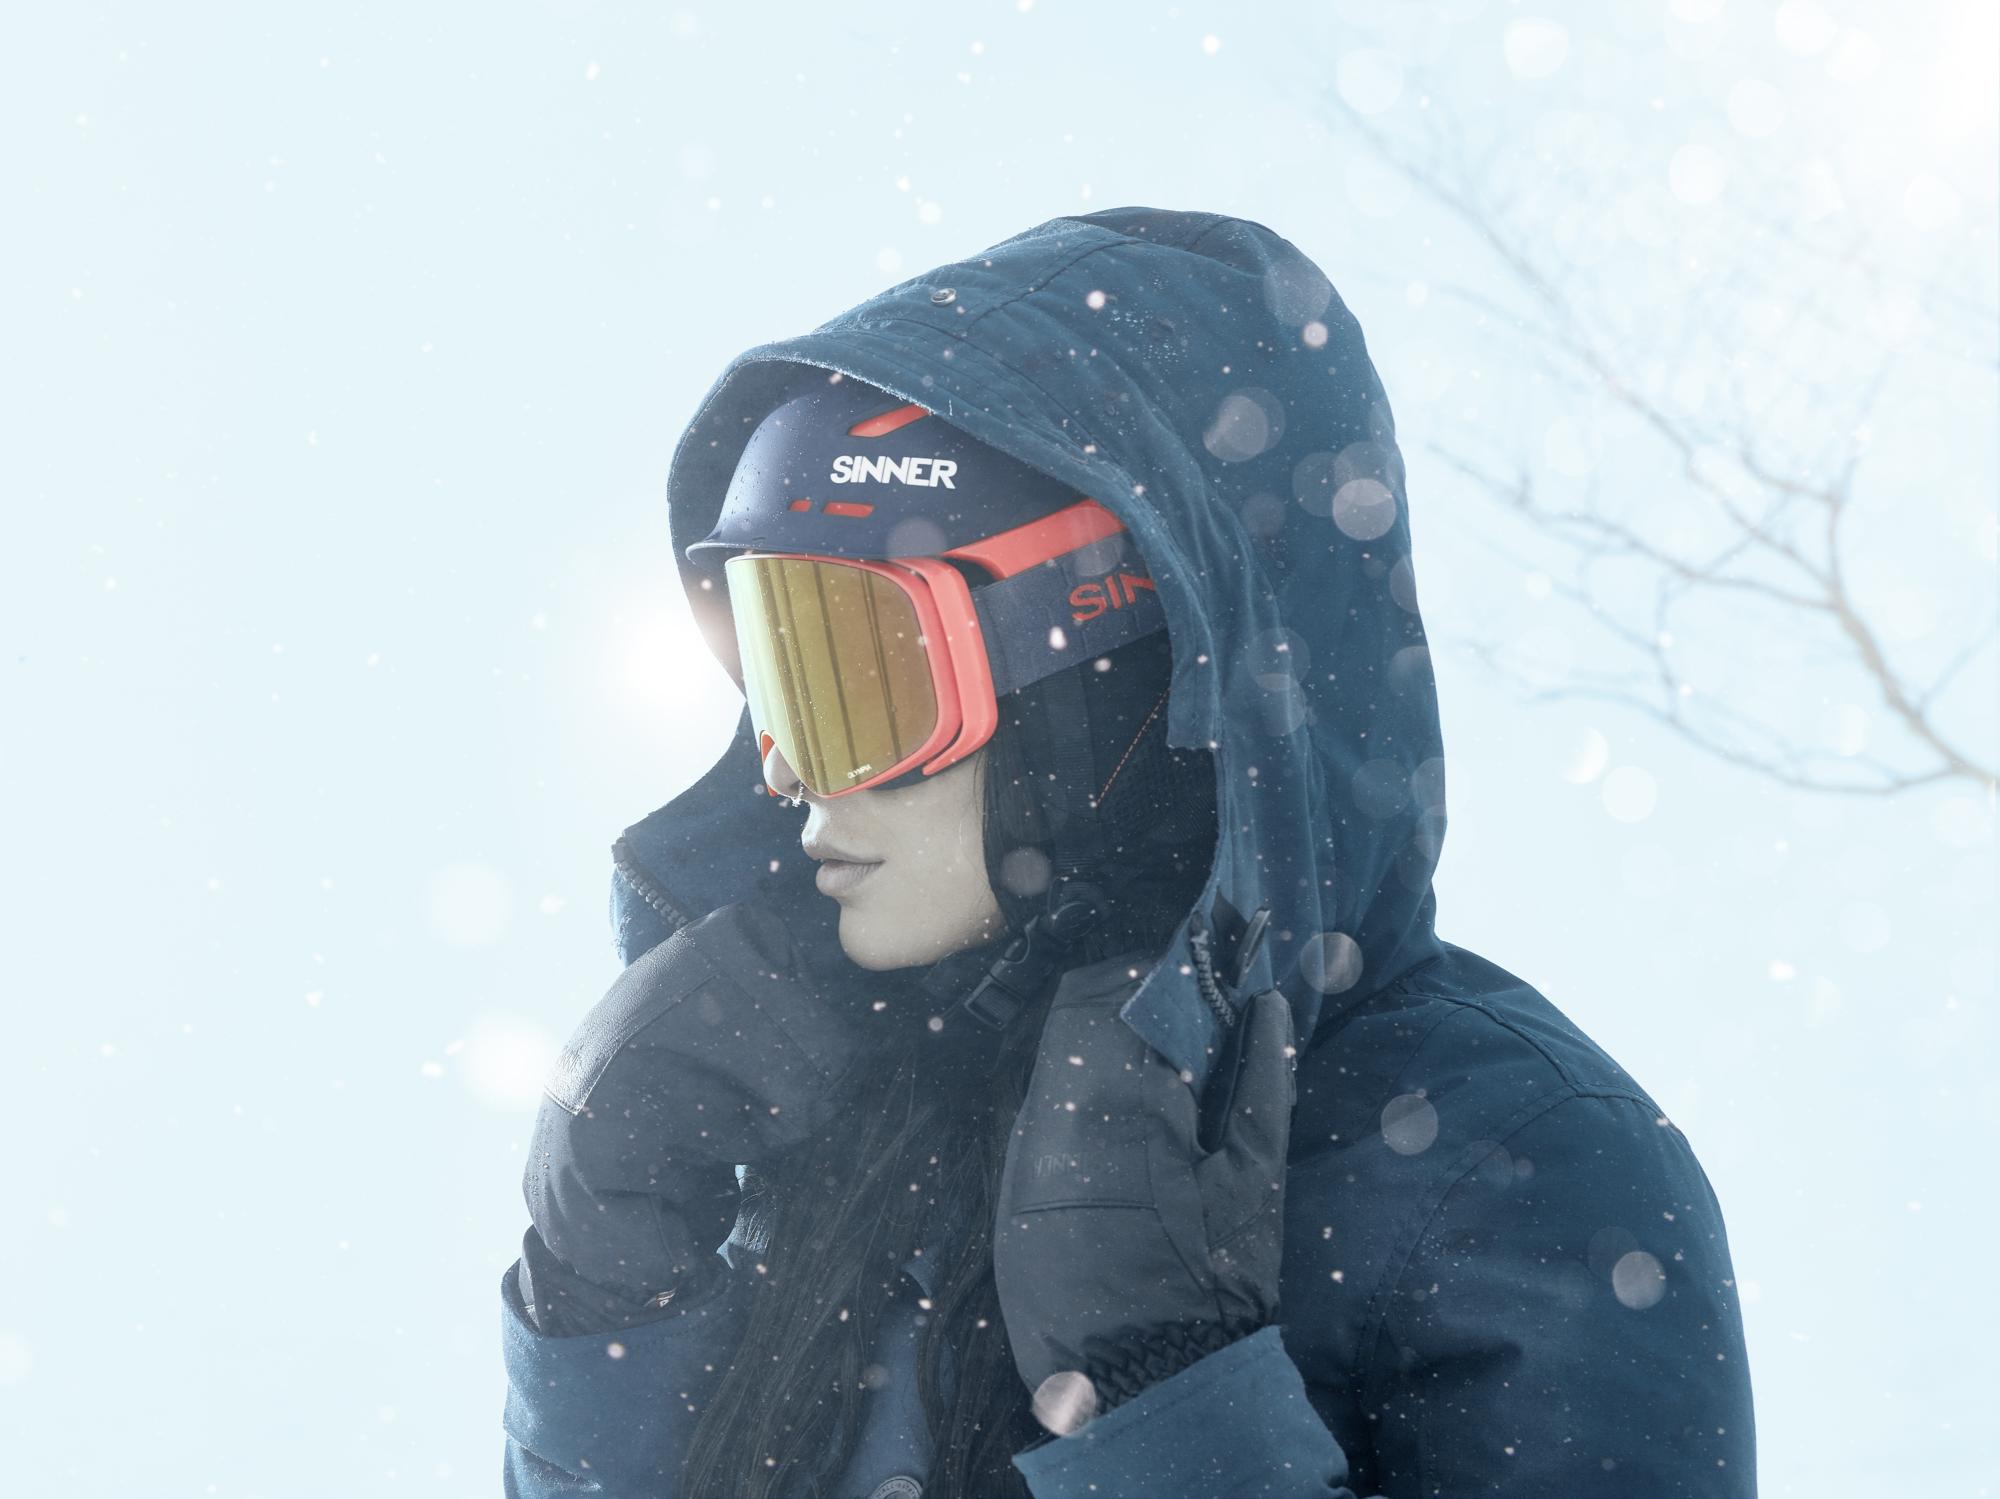 Wafel hoogtepunt melk Waar moet je op letten bij het uitkiezen van een skibril? | SnowWorld